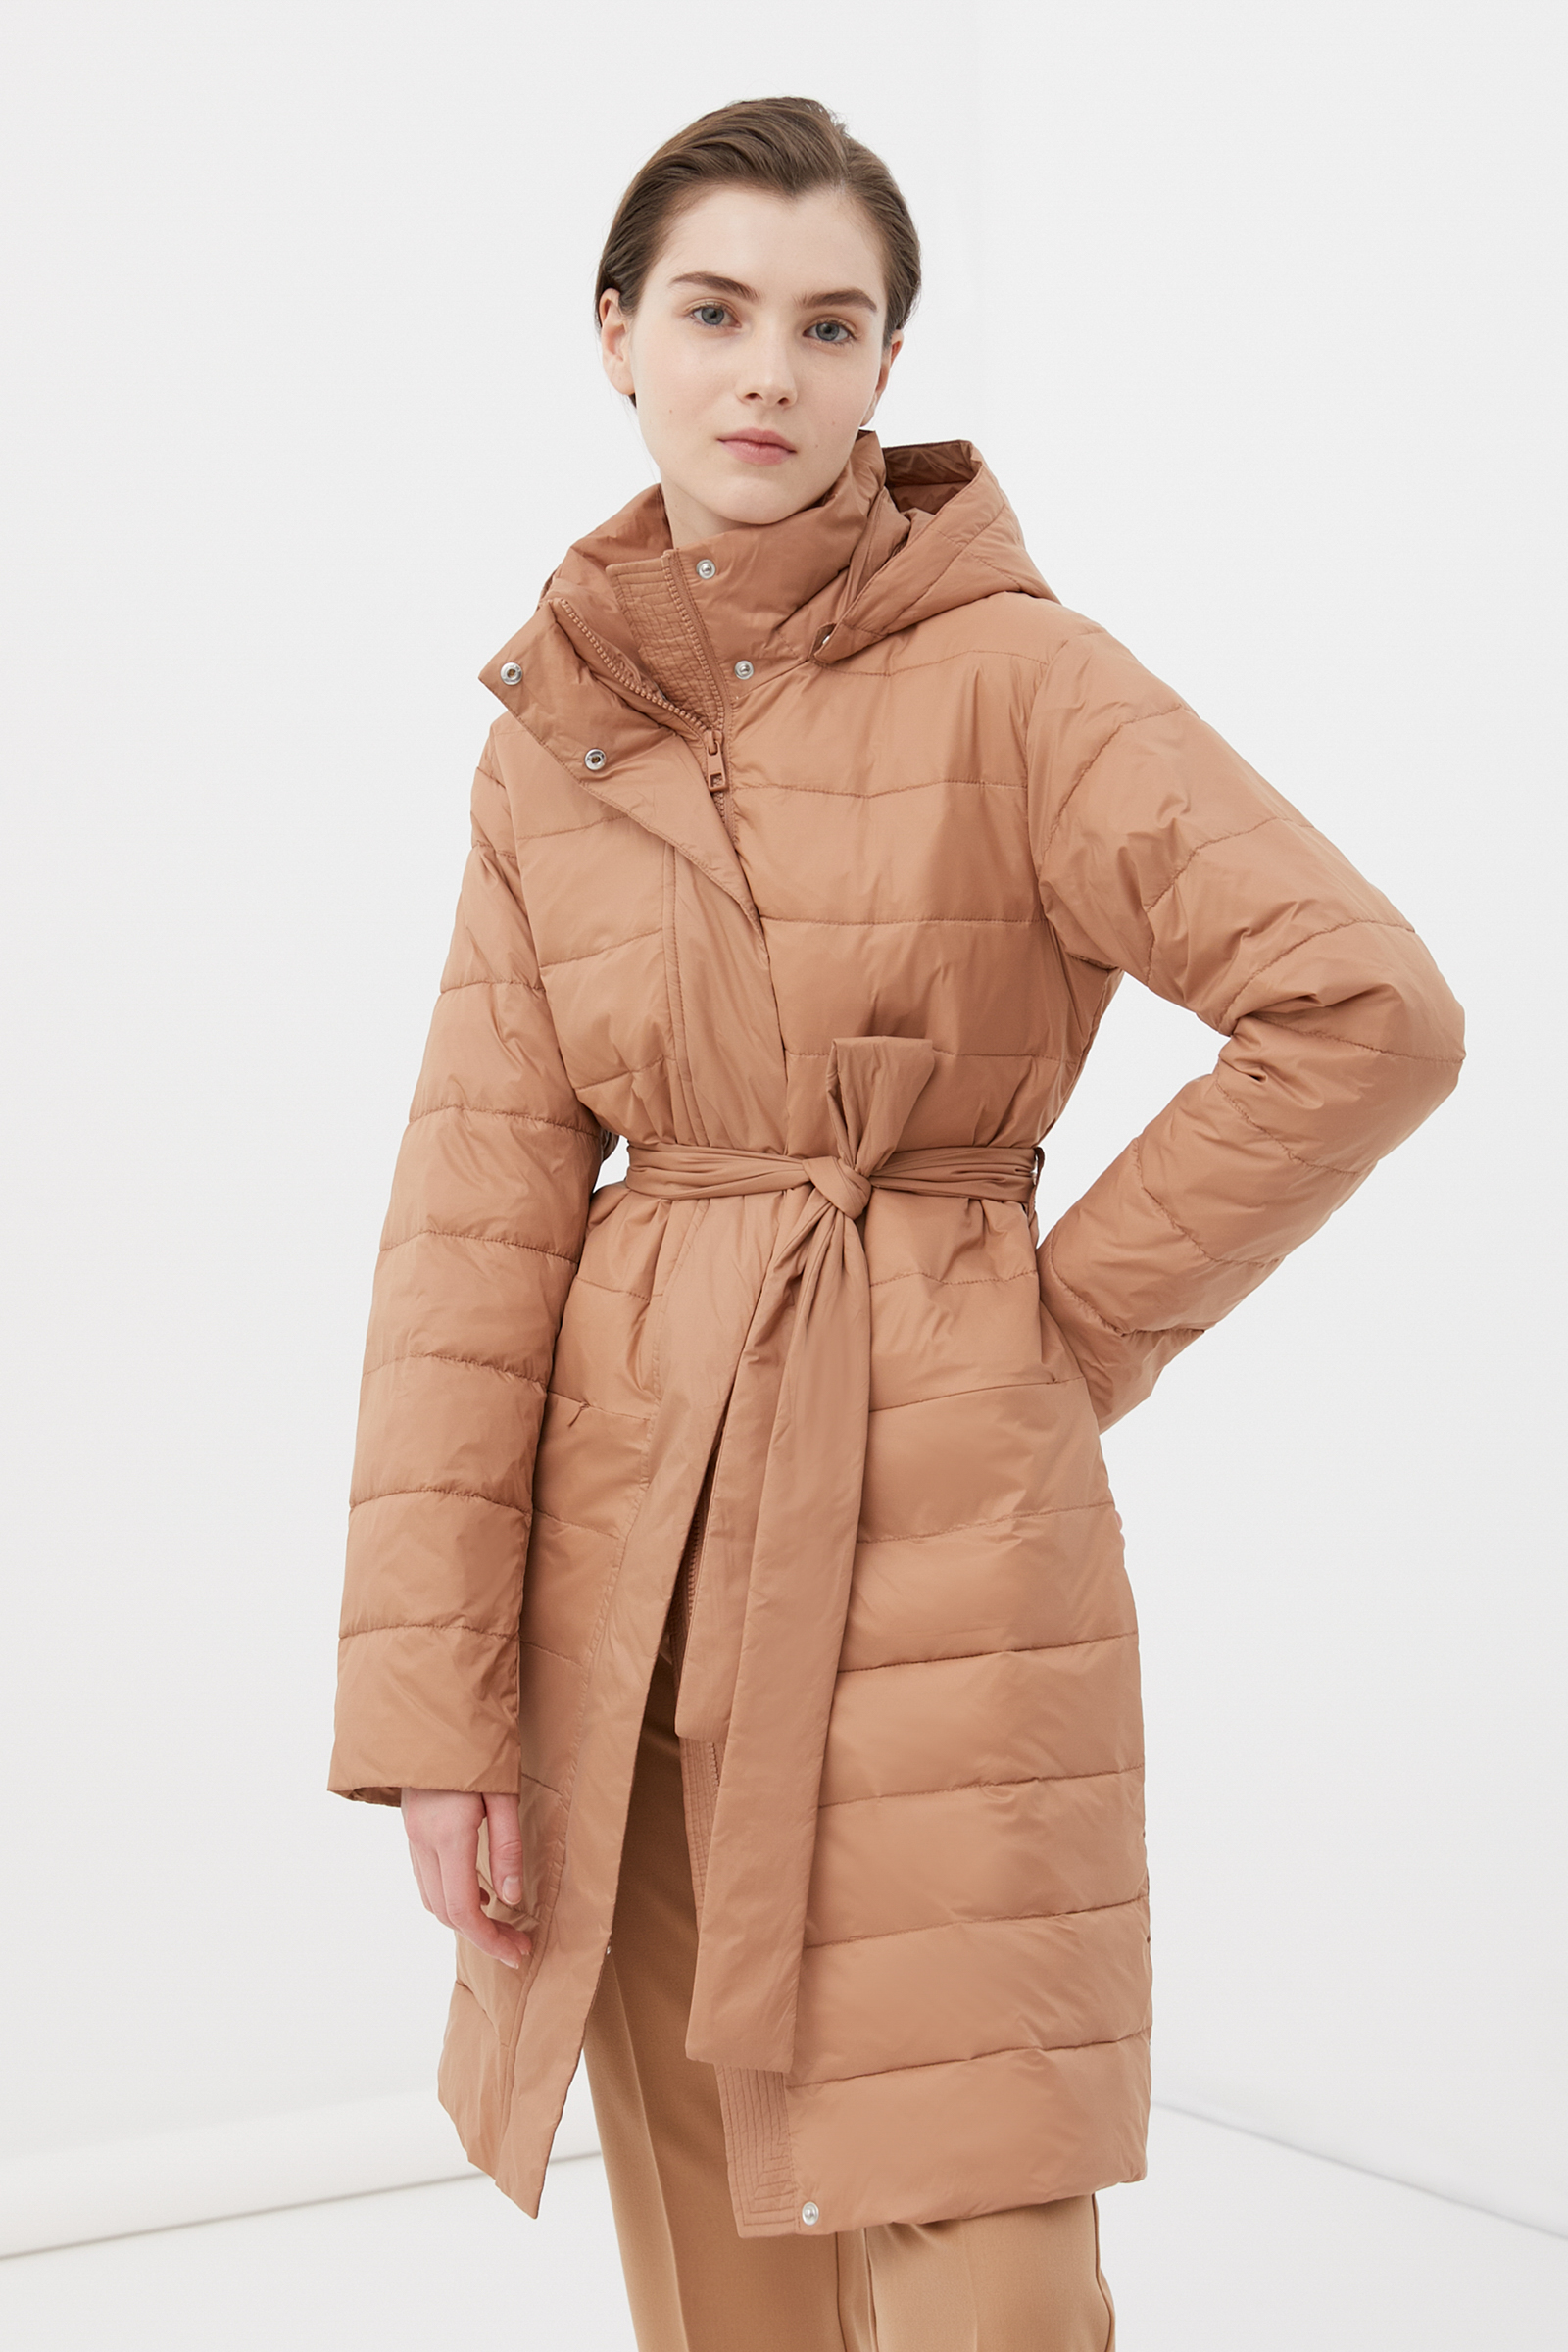 Пальто женское Finn Flare FBC11004 коричневое XS